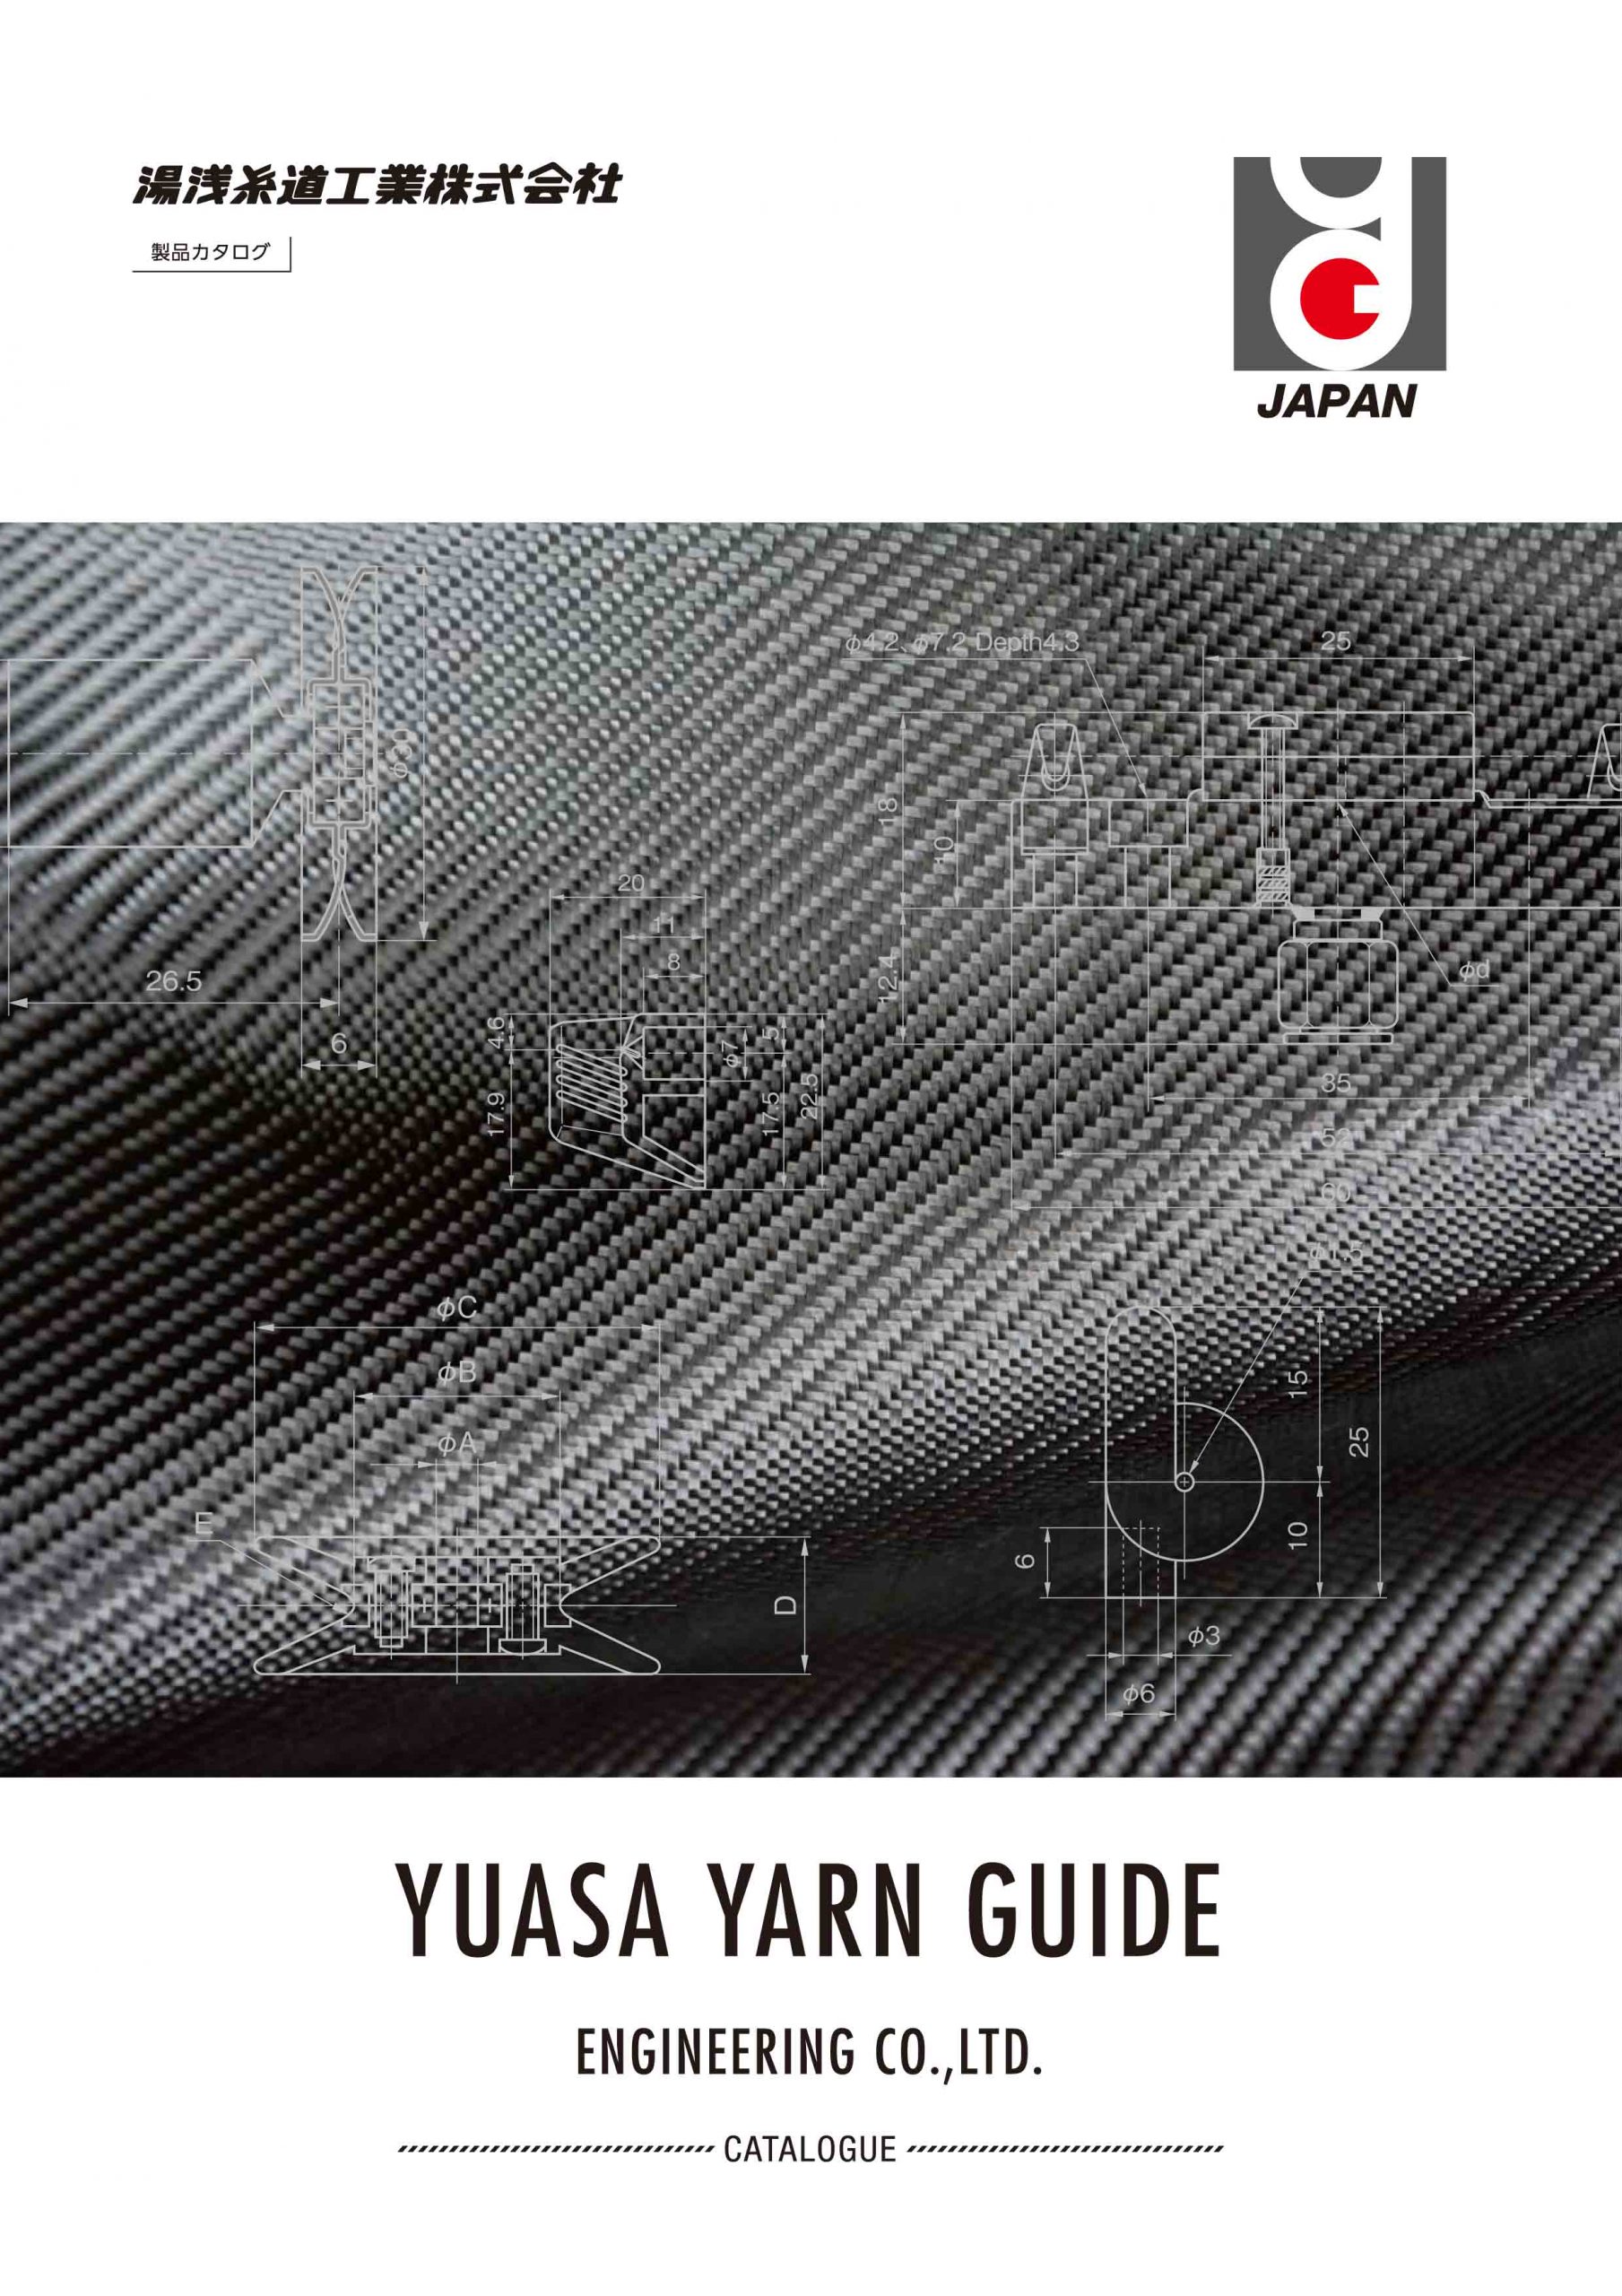 Yuasa Main Catalogue Thumbnail